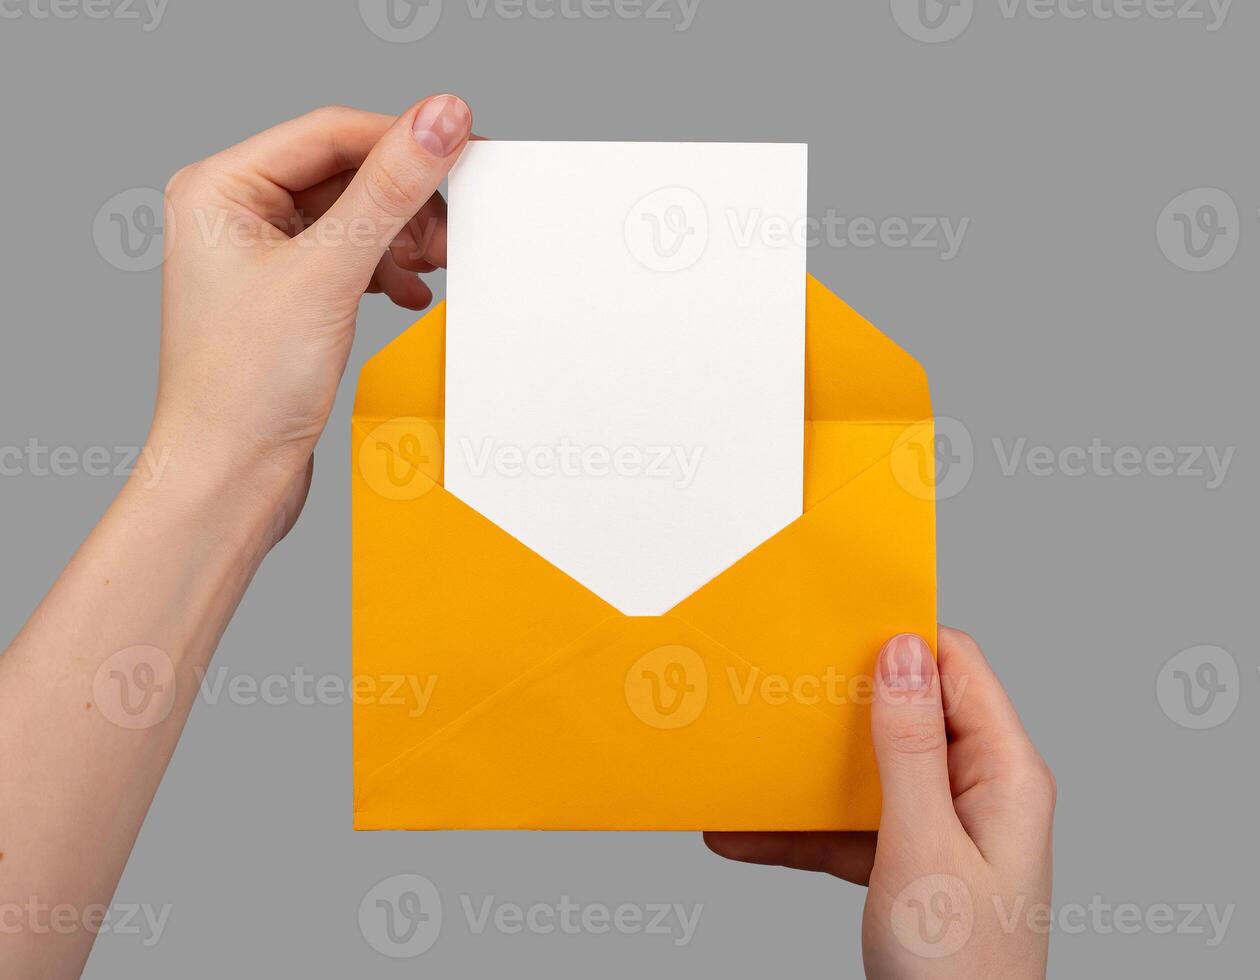 segurando aberto envelope com branco em branco cartão dentro, vertical cartão postal zombar acima foto